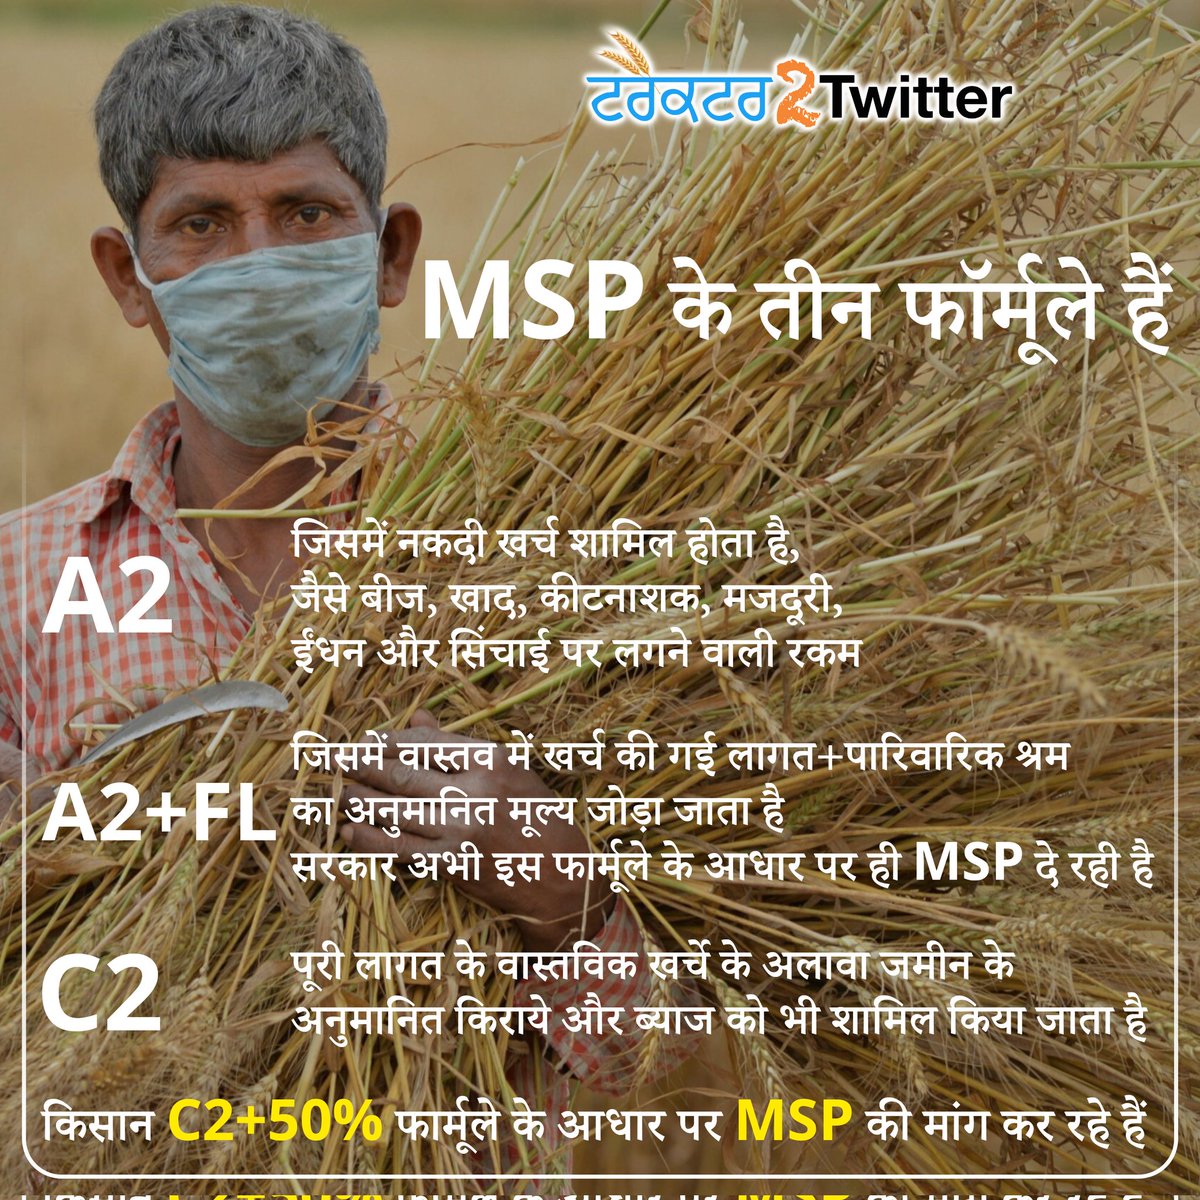 C2 पूरी लागत के वास्तविक खर्चे के अलावा जमीन के अनुमानित किराये और ब्याज को भी शामिल किया जाता है, किसान C2 +50% फार्मूले के आधार पर MSP की मांग कर रहे हैं। #Legalize_MSP